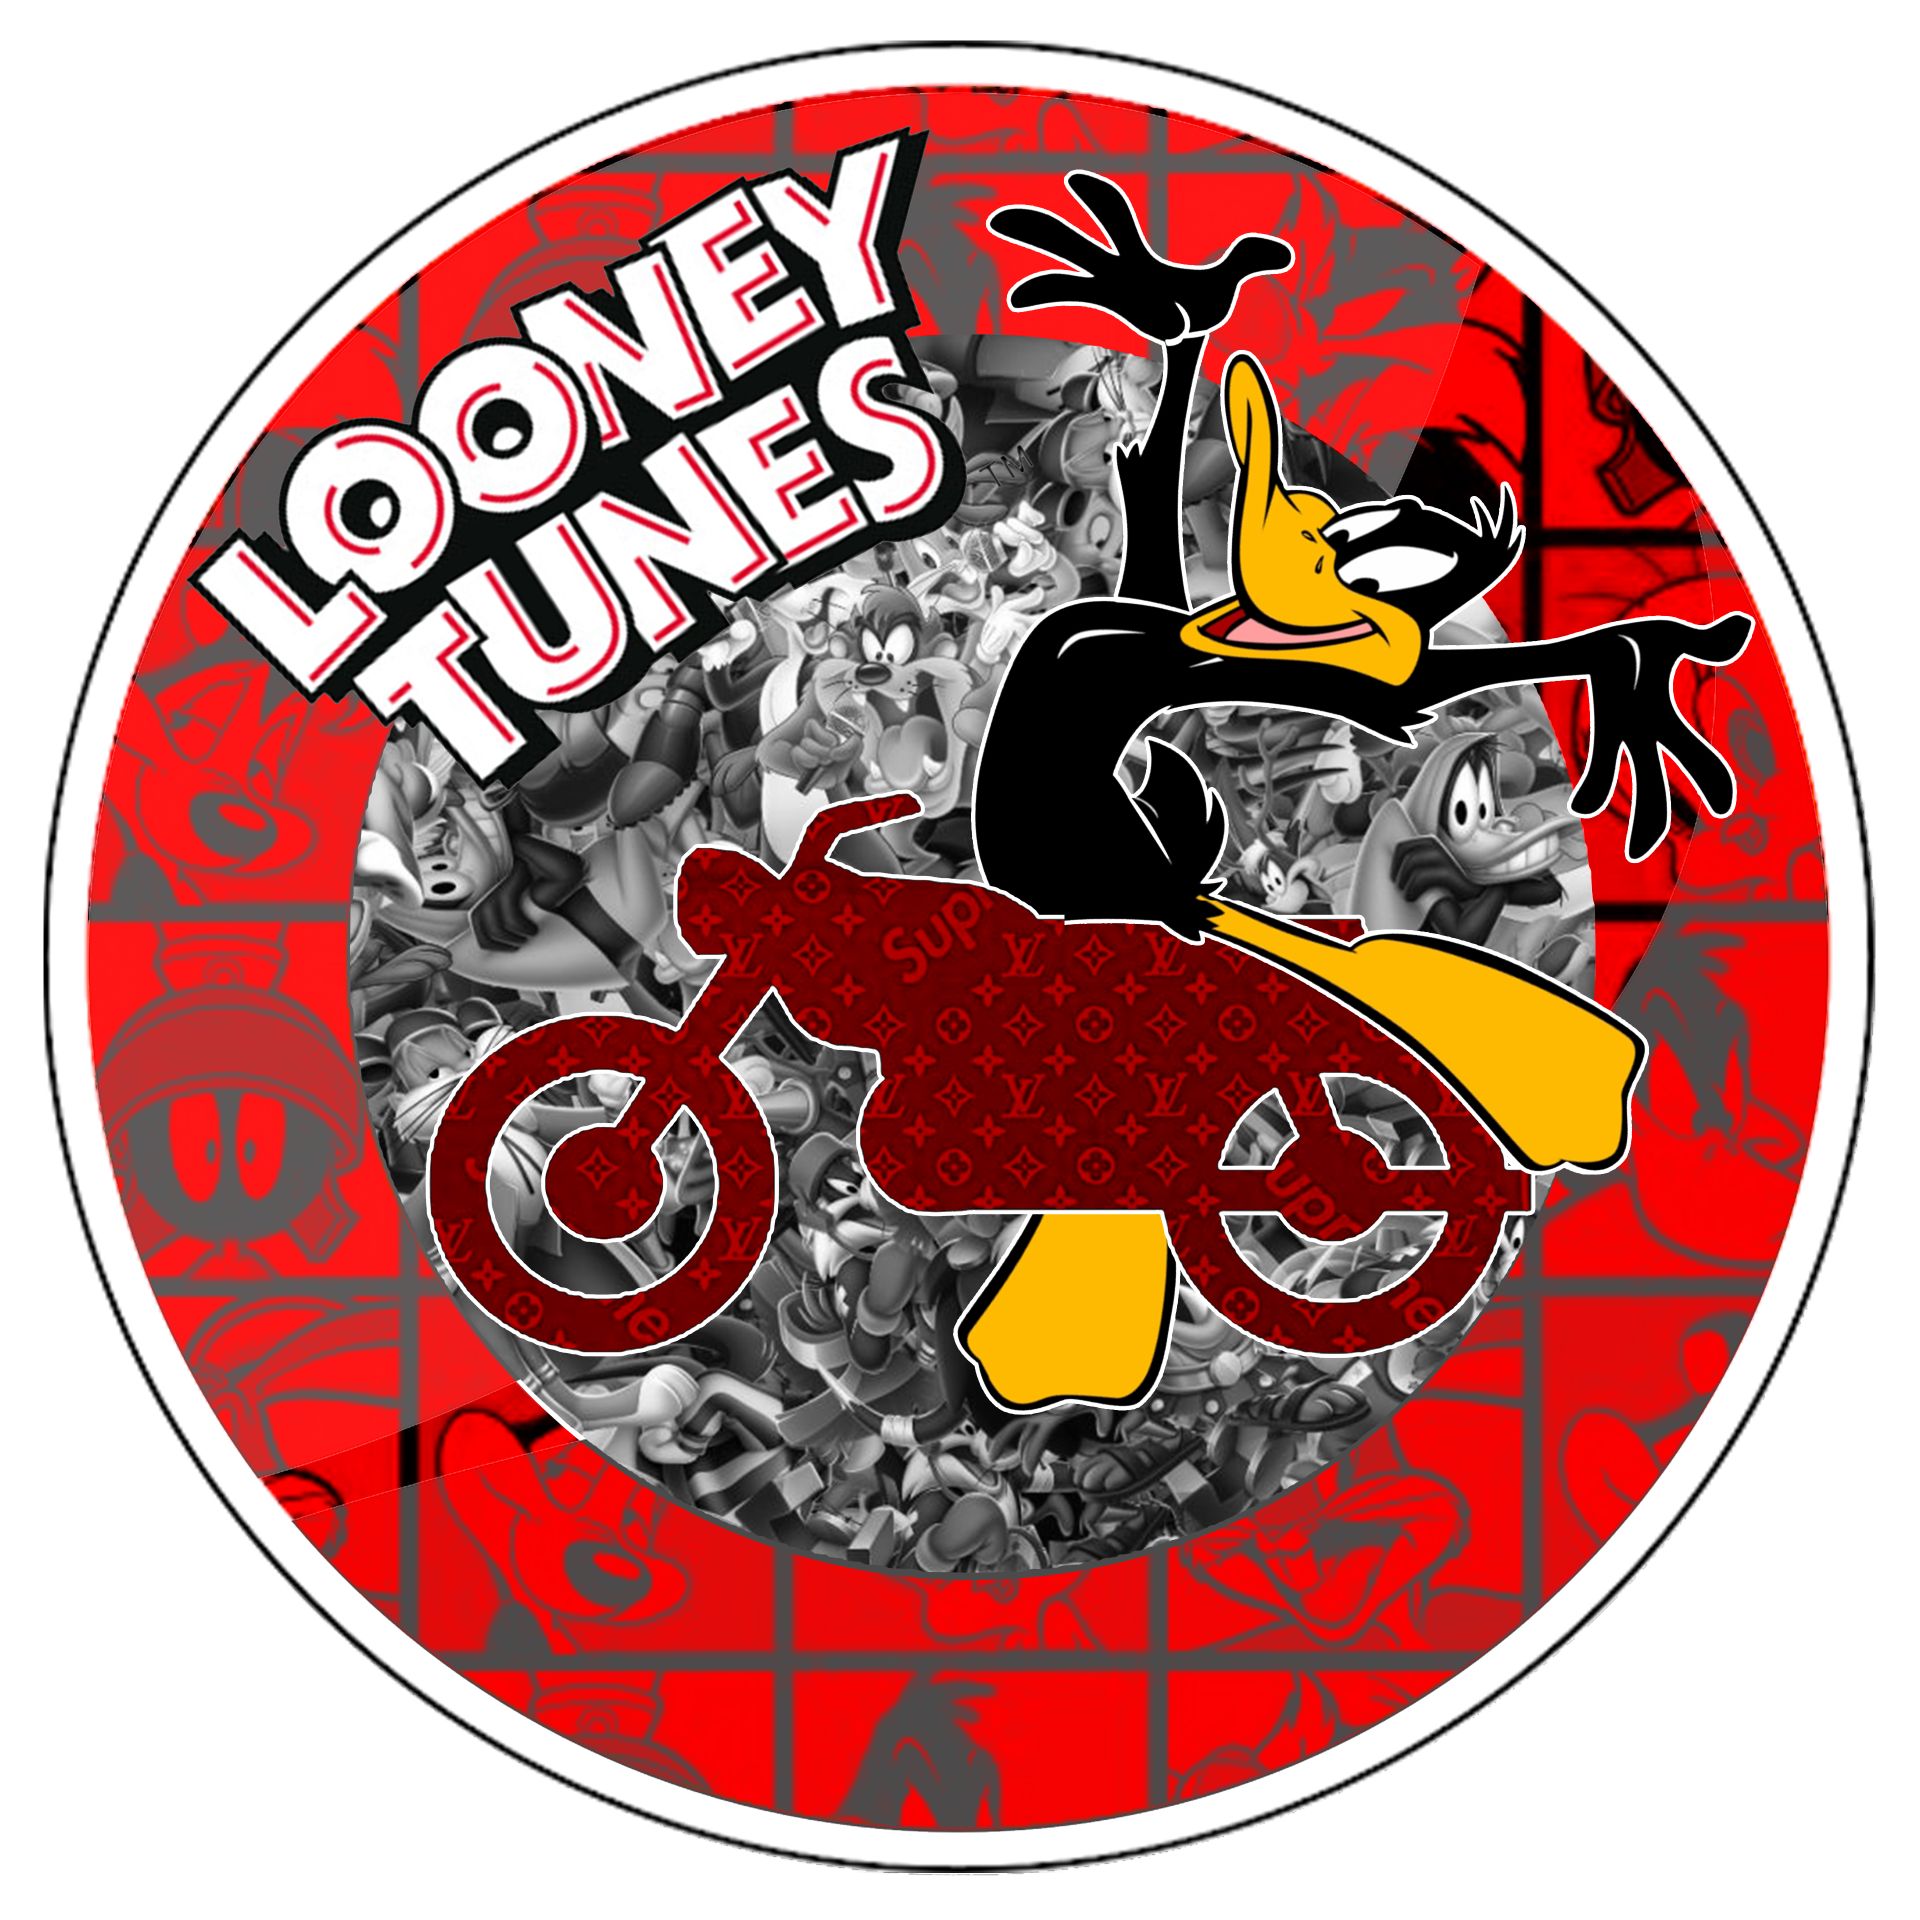 Charly Rocks (Né en 1983) Looney tunes, 2021

Verkehrsschild

Druck auf Plexigla&hellip;